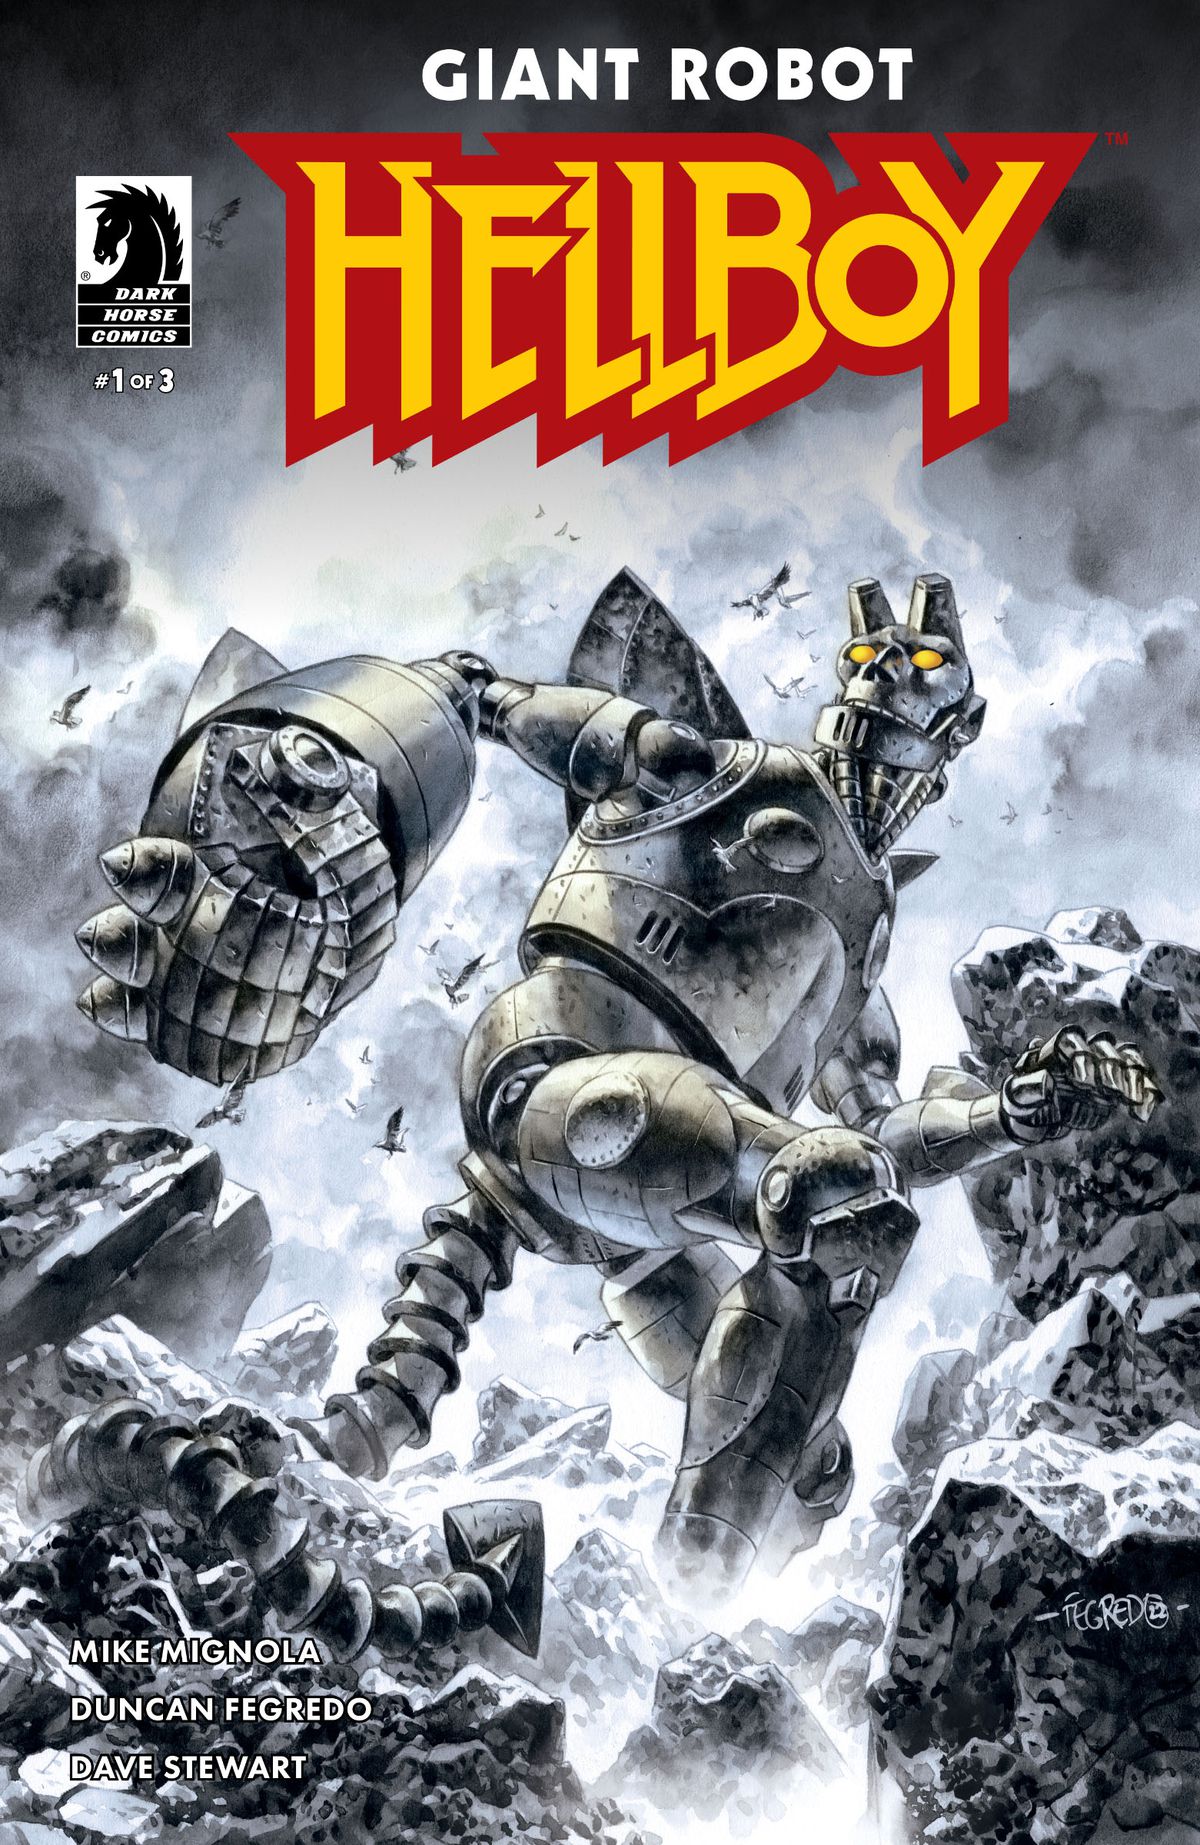 Giant Robot Hellboy gör en cool pose bland några taggiga klippor på omslaget till Giant Robot Hellboy #1. 